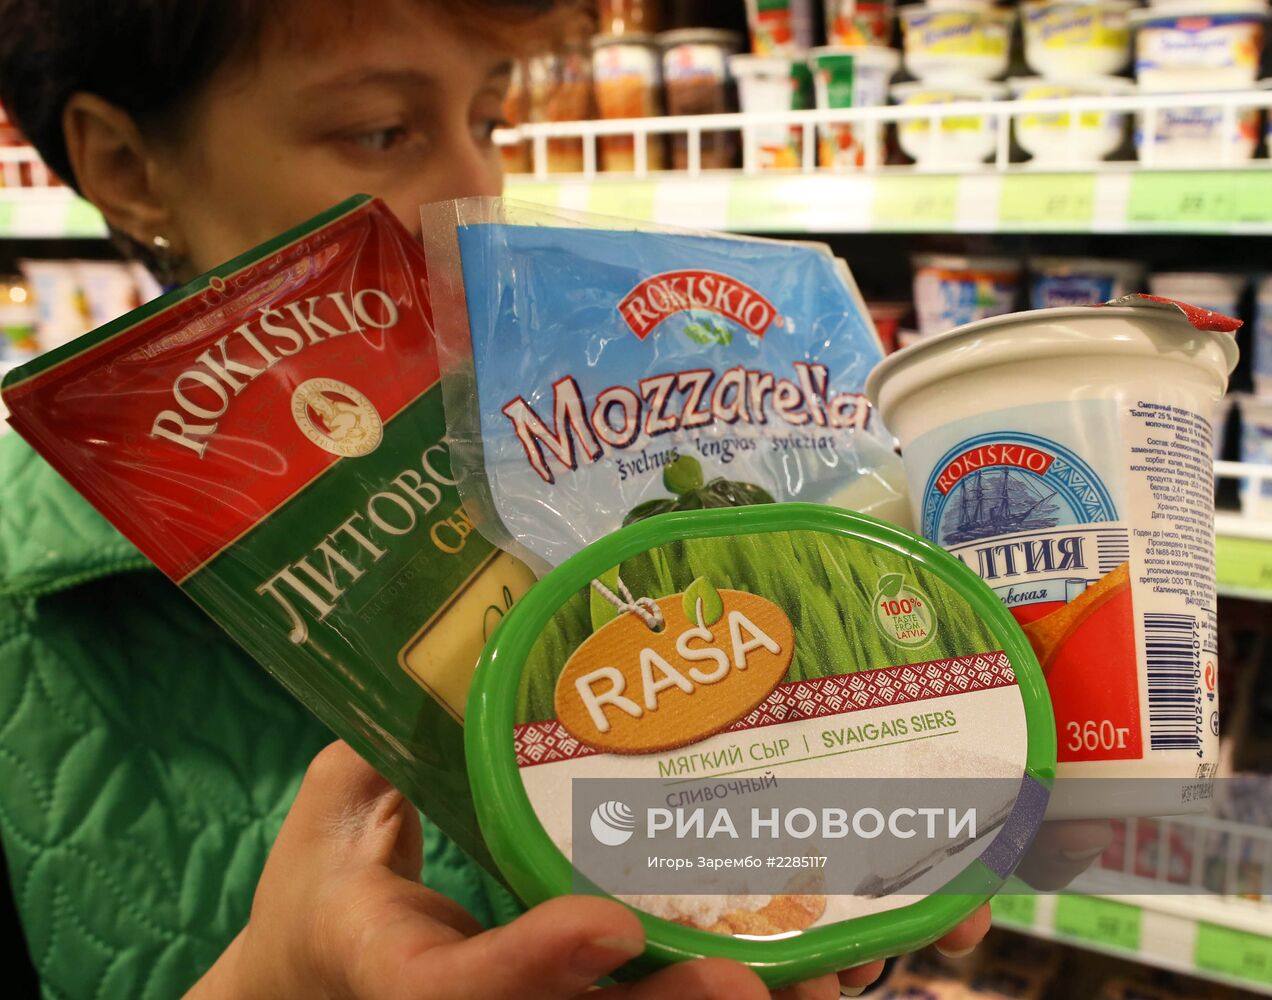 Роспотребнадзор проверит молочную продукцию из Литвы